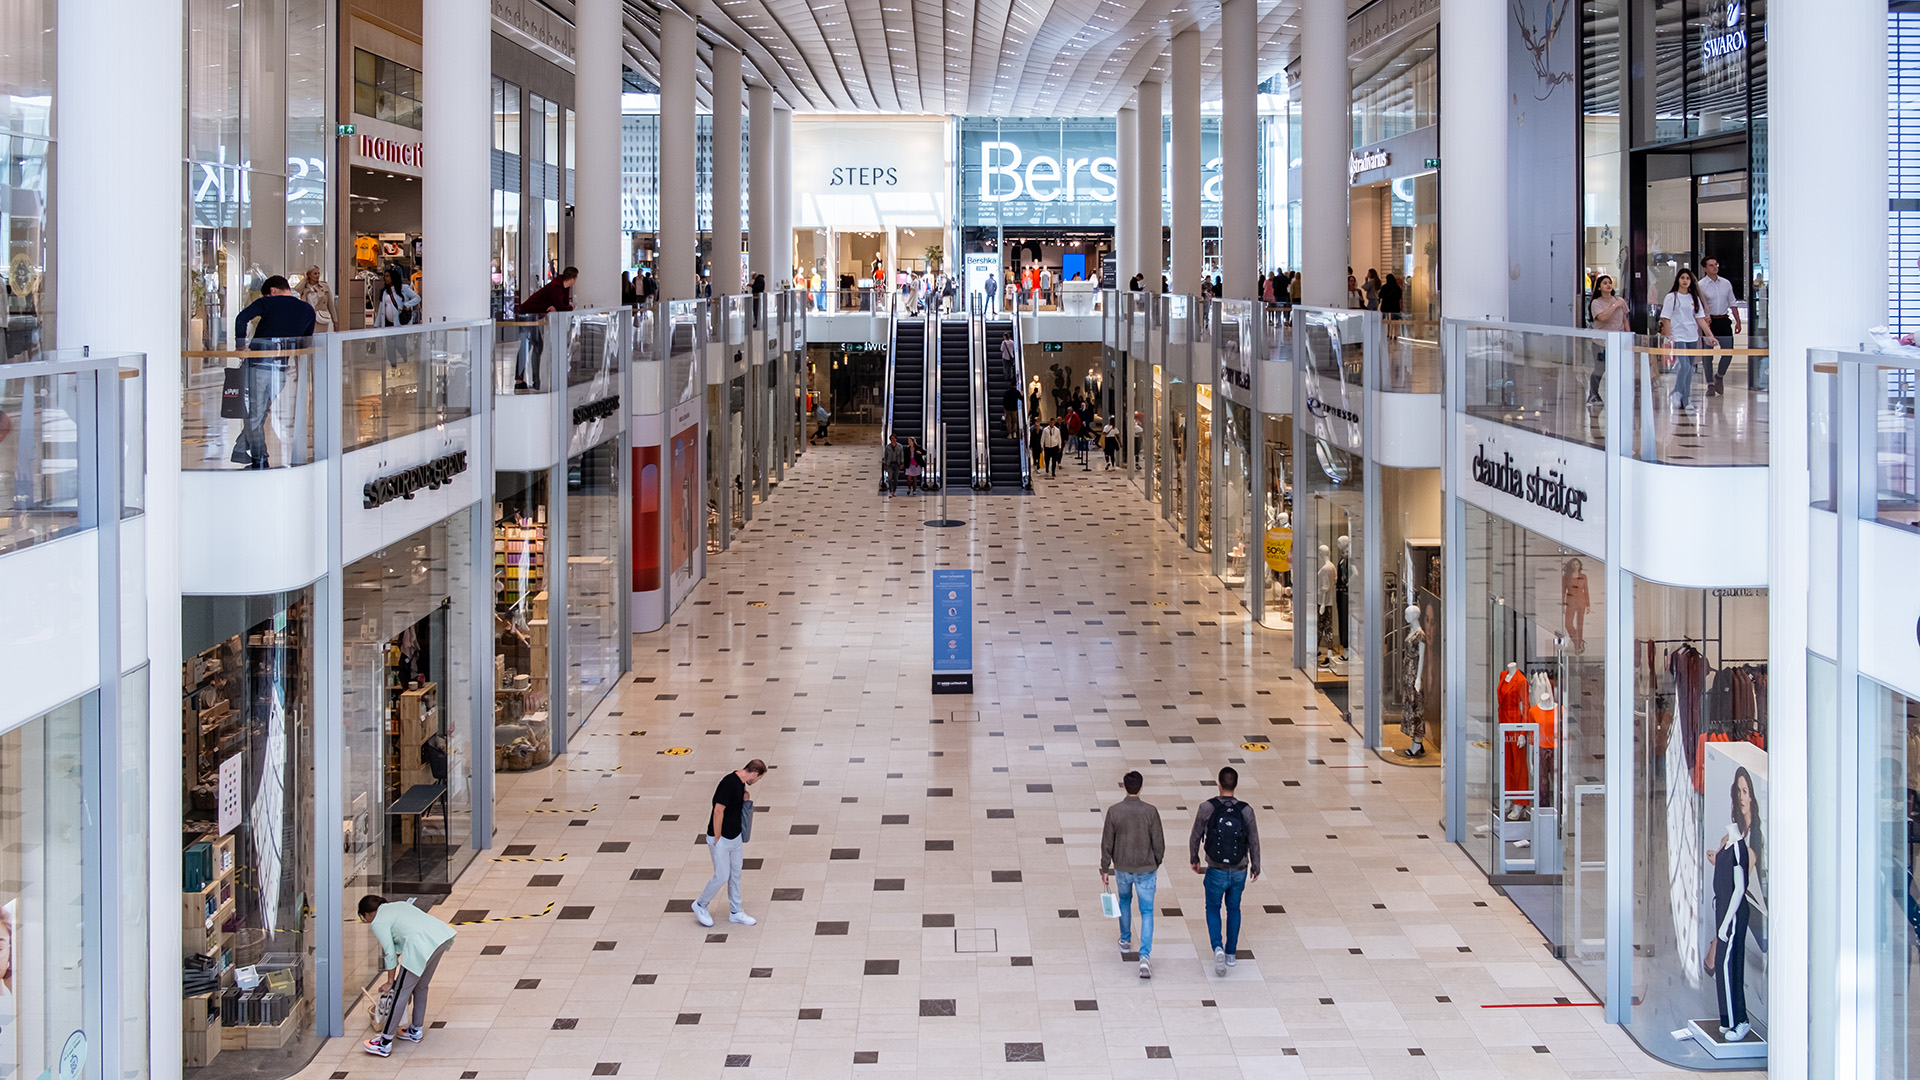 Utrechts winkelcentrum Hoog Catharijne tijdens de coronacrisis fokke baarssen / Shutterstock.com